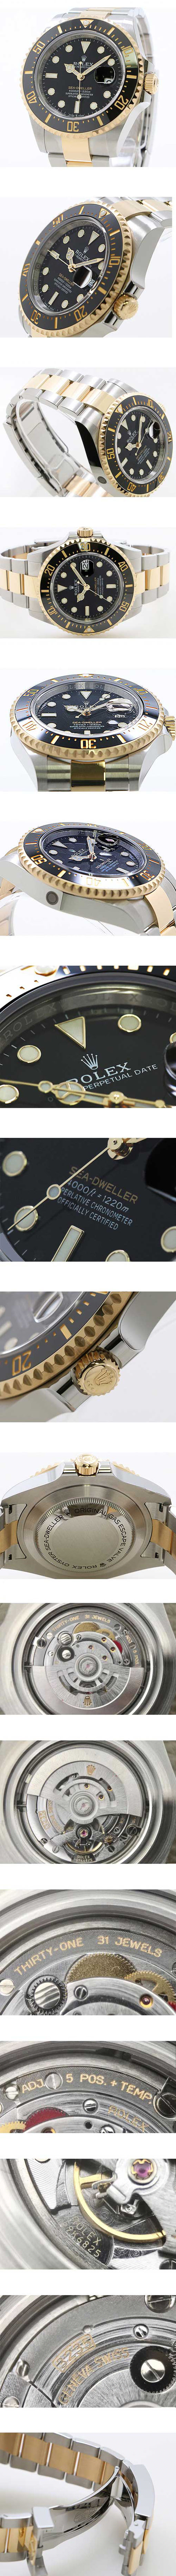 メンズ腕時計おすすめ：ロレックスコピー時計 シードゥエラー 126603コピー時計通販【Cal.3235ムーブメント 】